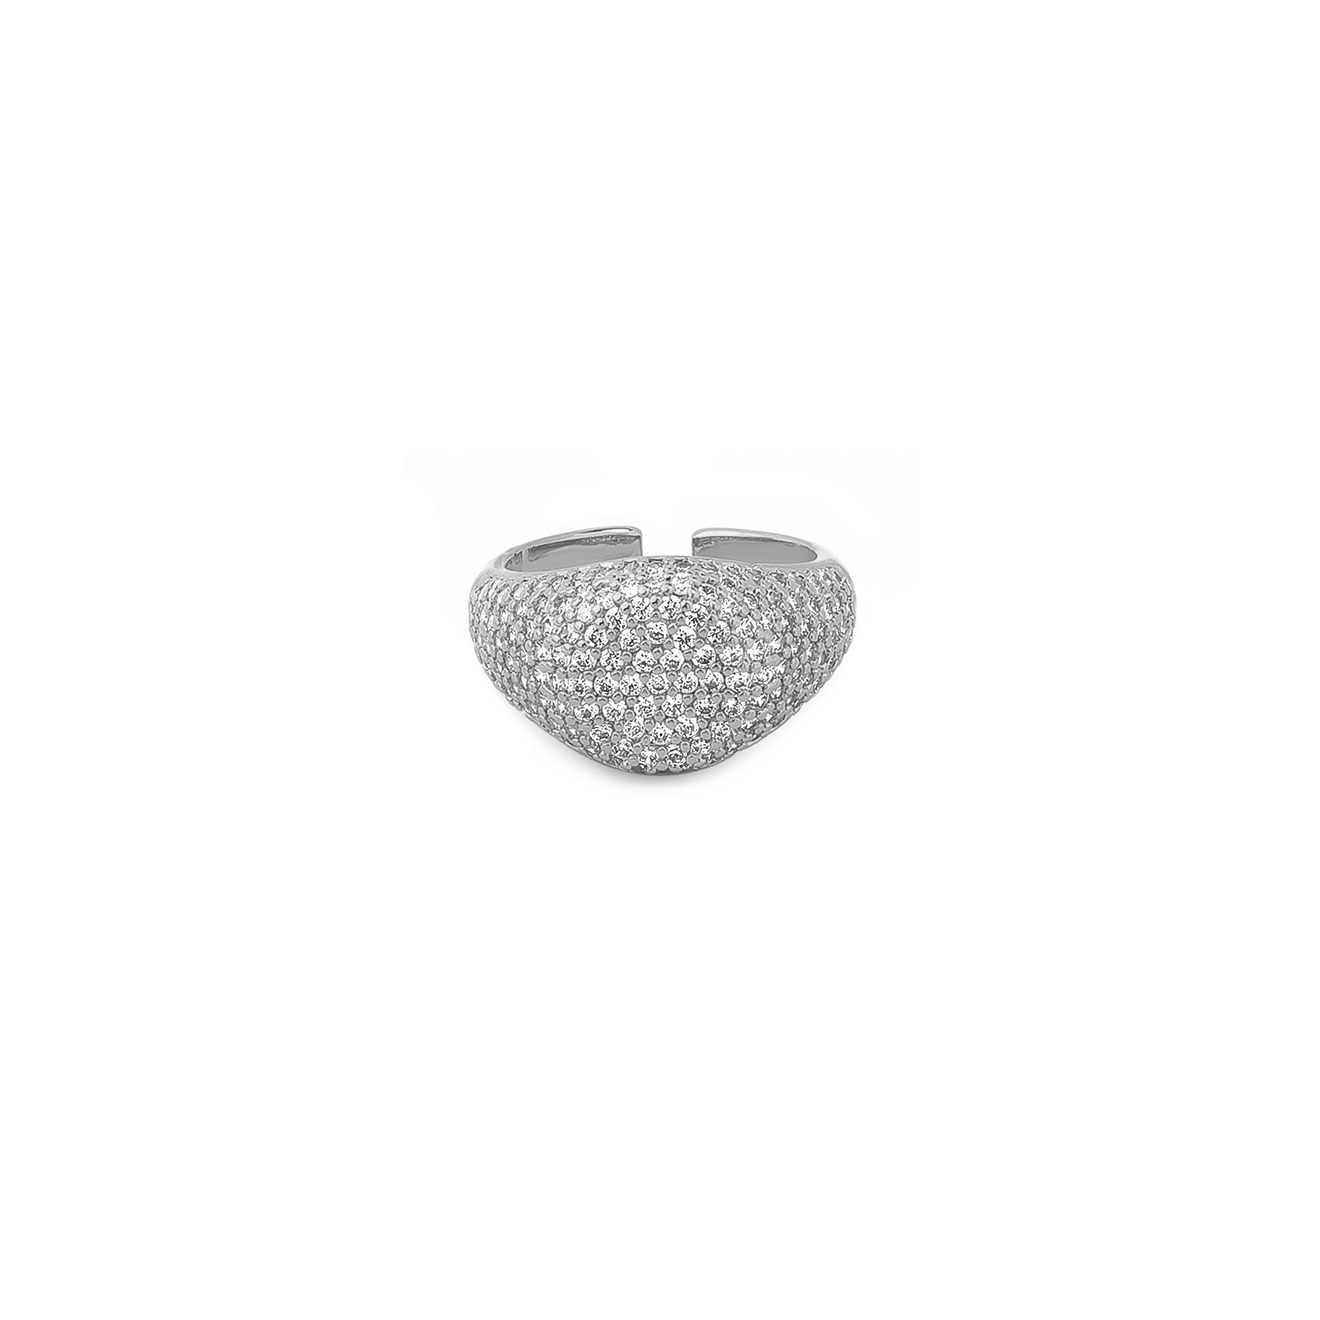 Herald Percy Серебристое кольцо-печатка с кристаллами lisa smith серебристое кольцо с кристаллами